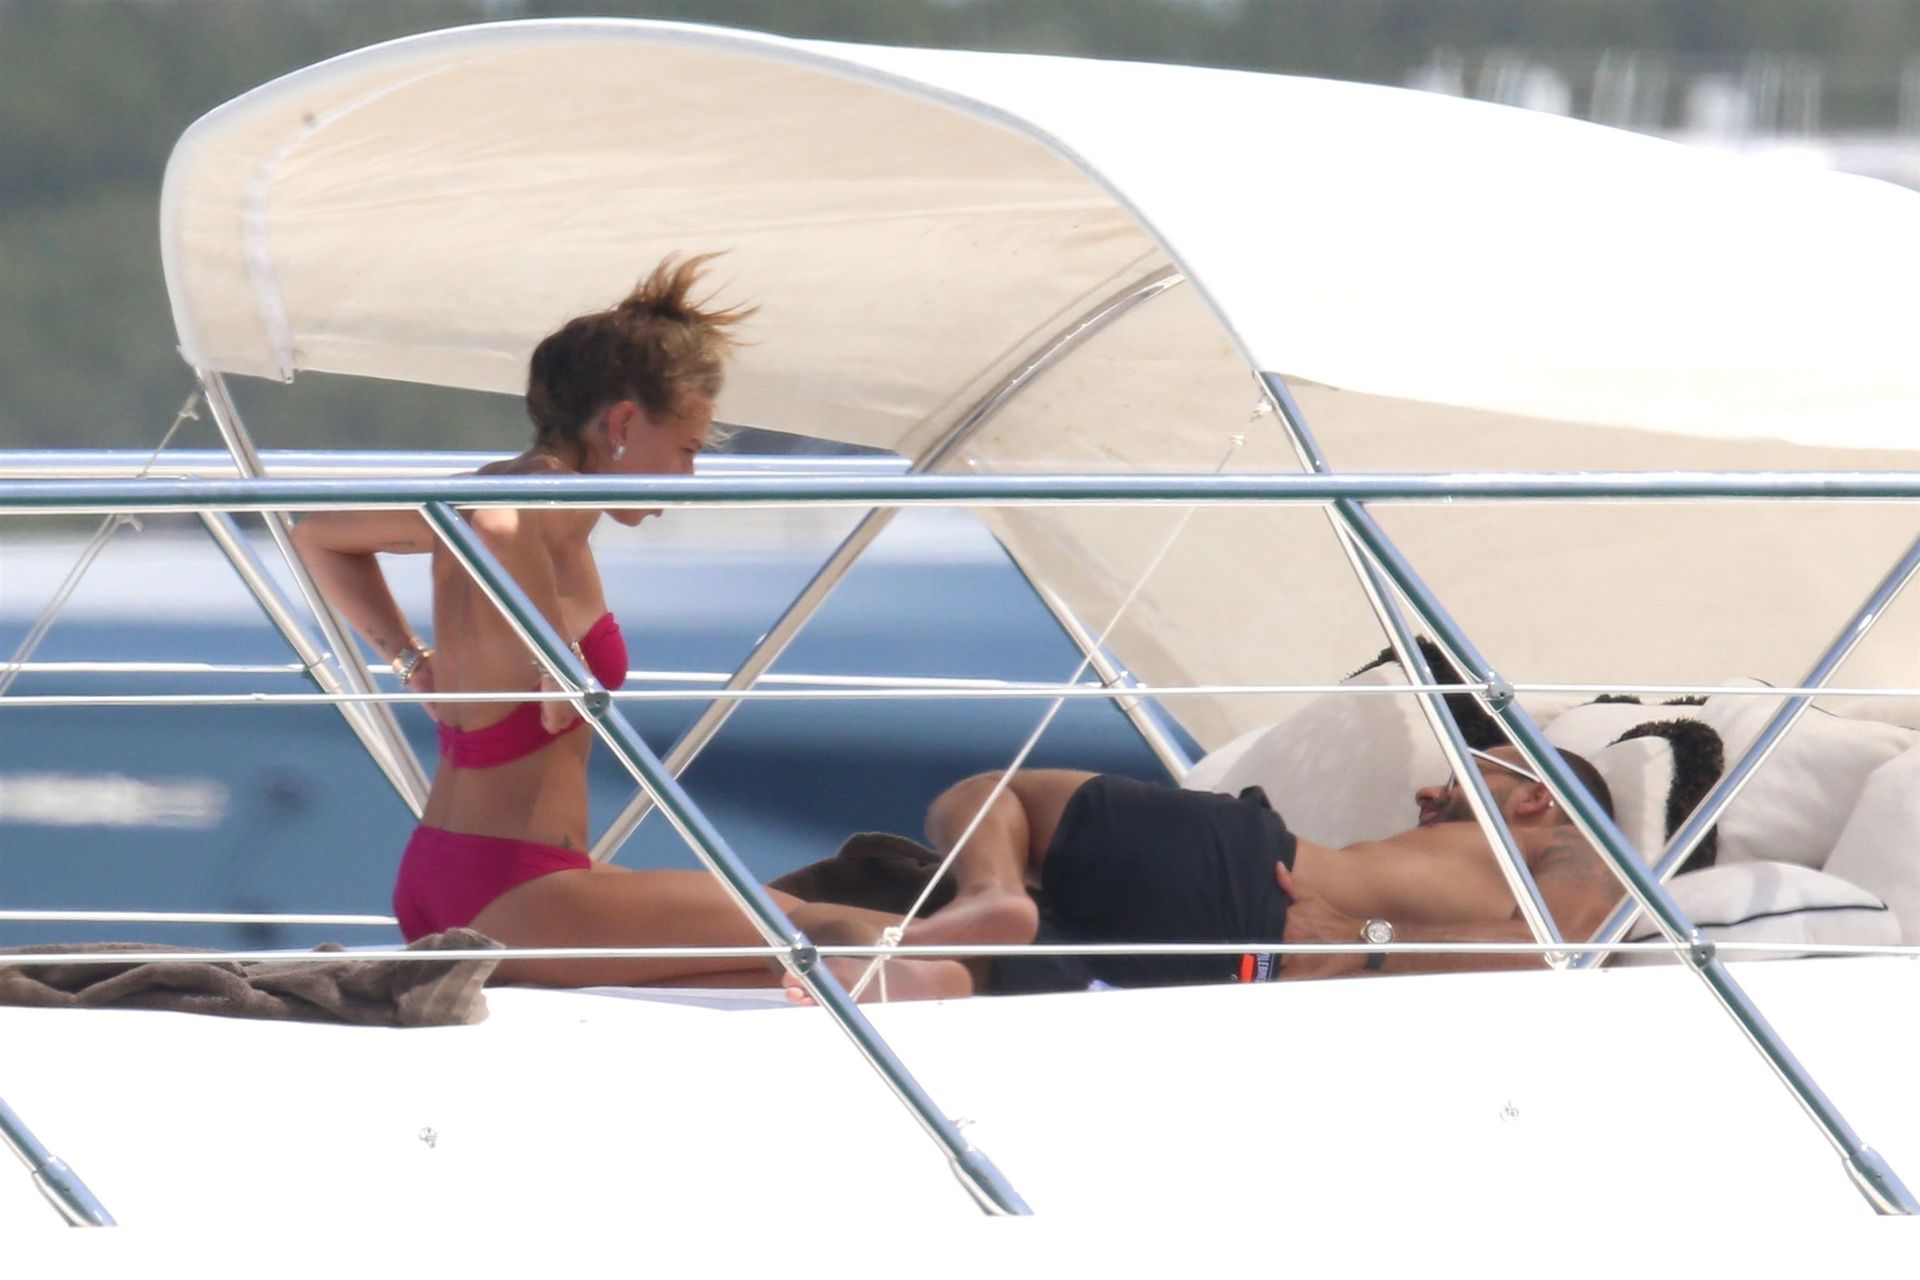 Η Chloe Green topless στις διακοπές της σε yacht!